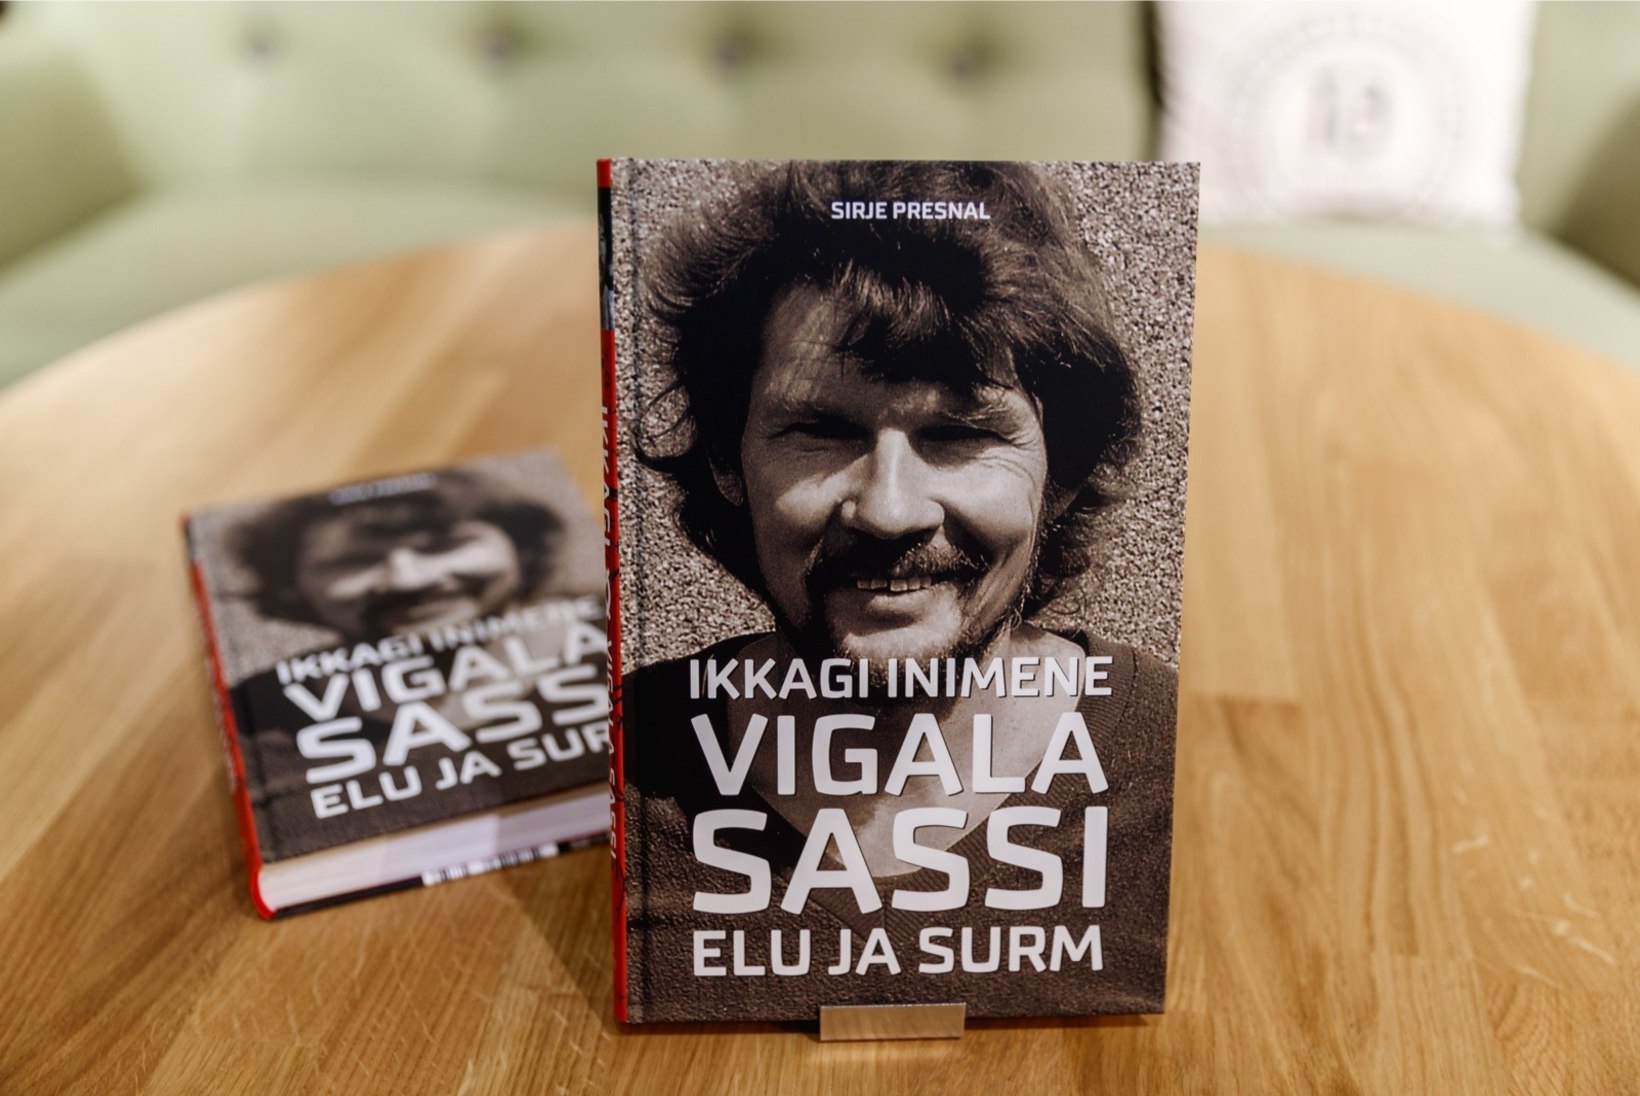 GALERII | Võimas debüüt kirjanikuna: Sirje Presnal esitles Vigala Sassi elulooraamatut